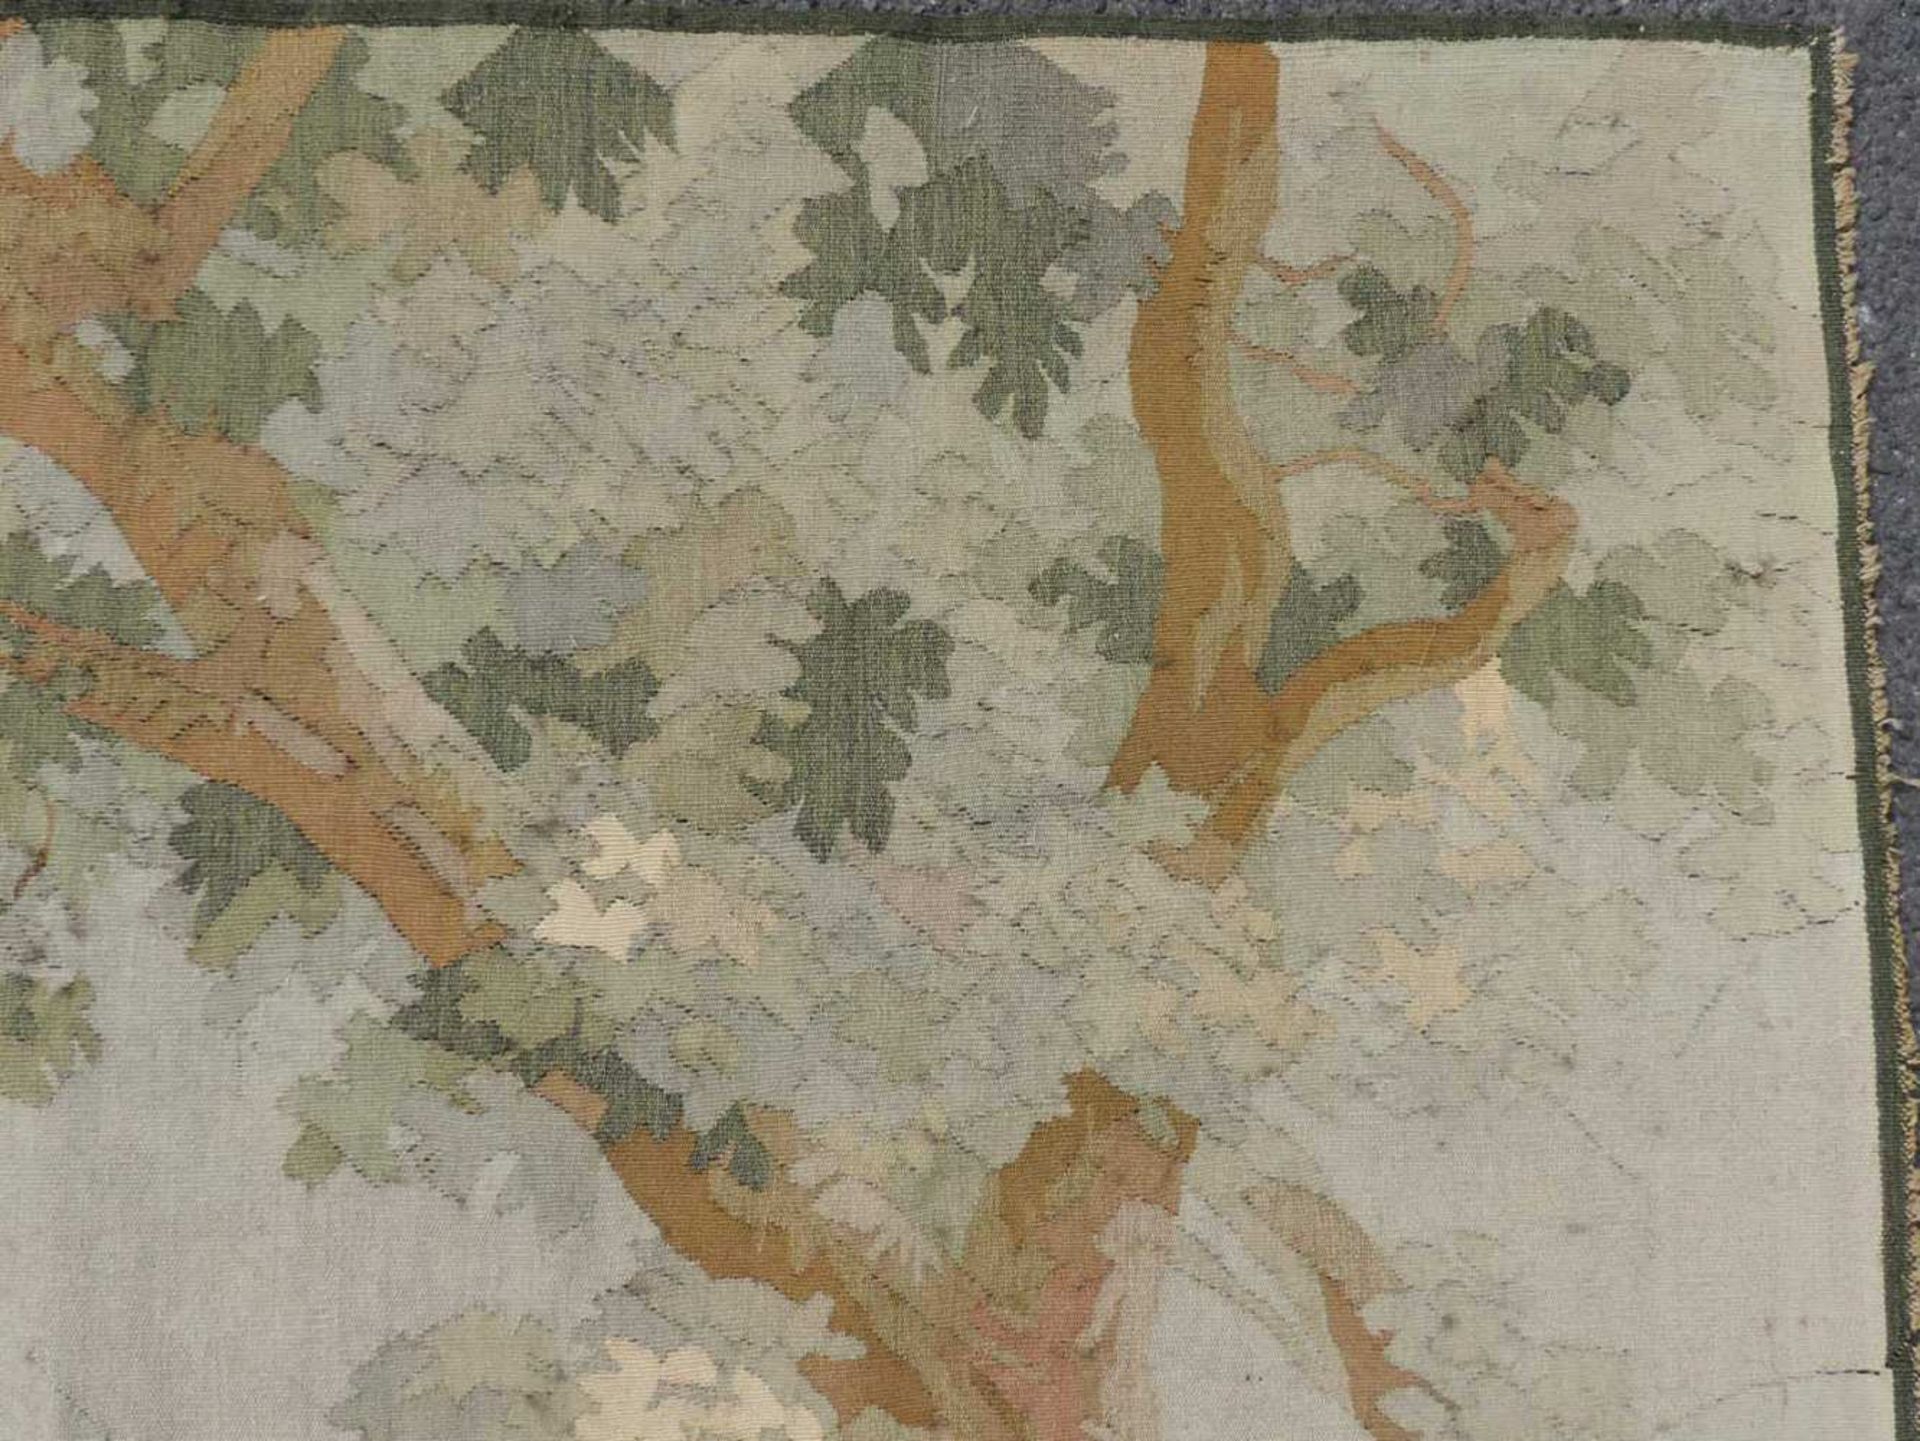 Aubusson-Tapisserie. Frankreich, antik, um 1860. 160 cm x 120 cm. Handgewebt, Wolle und Seide. - Image 5 of 9